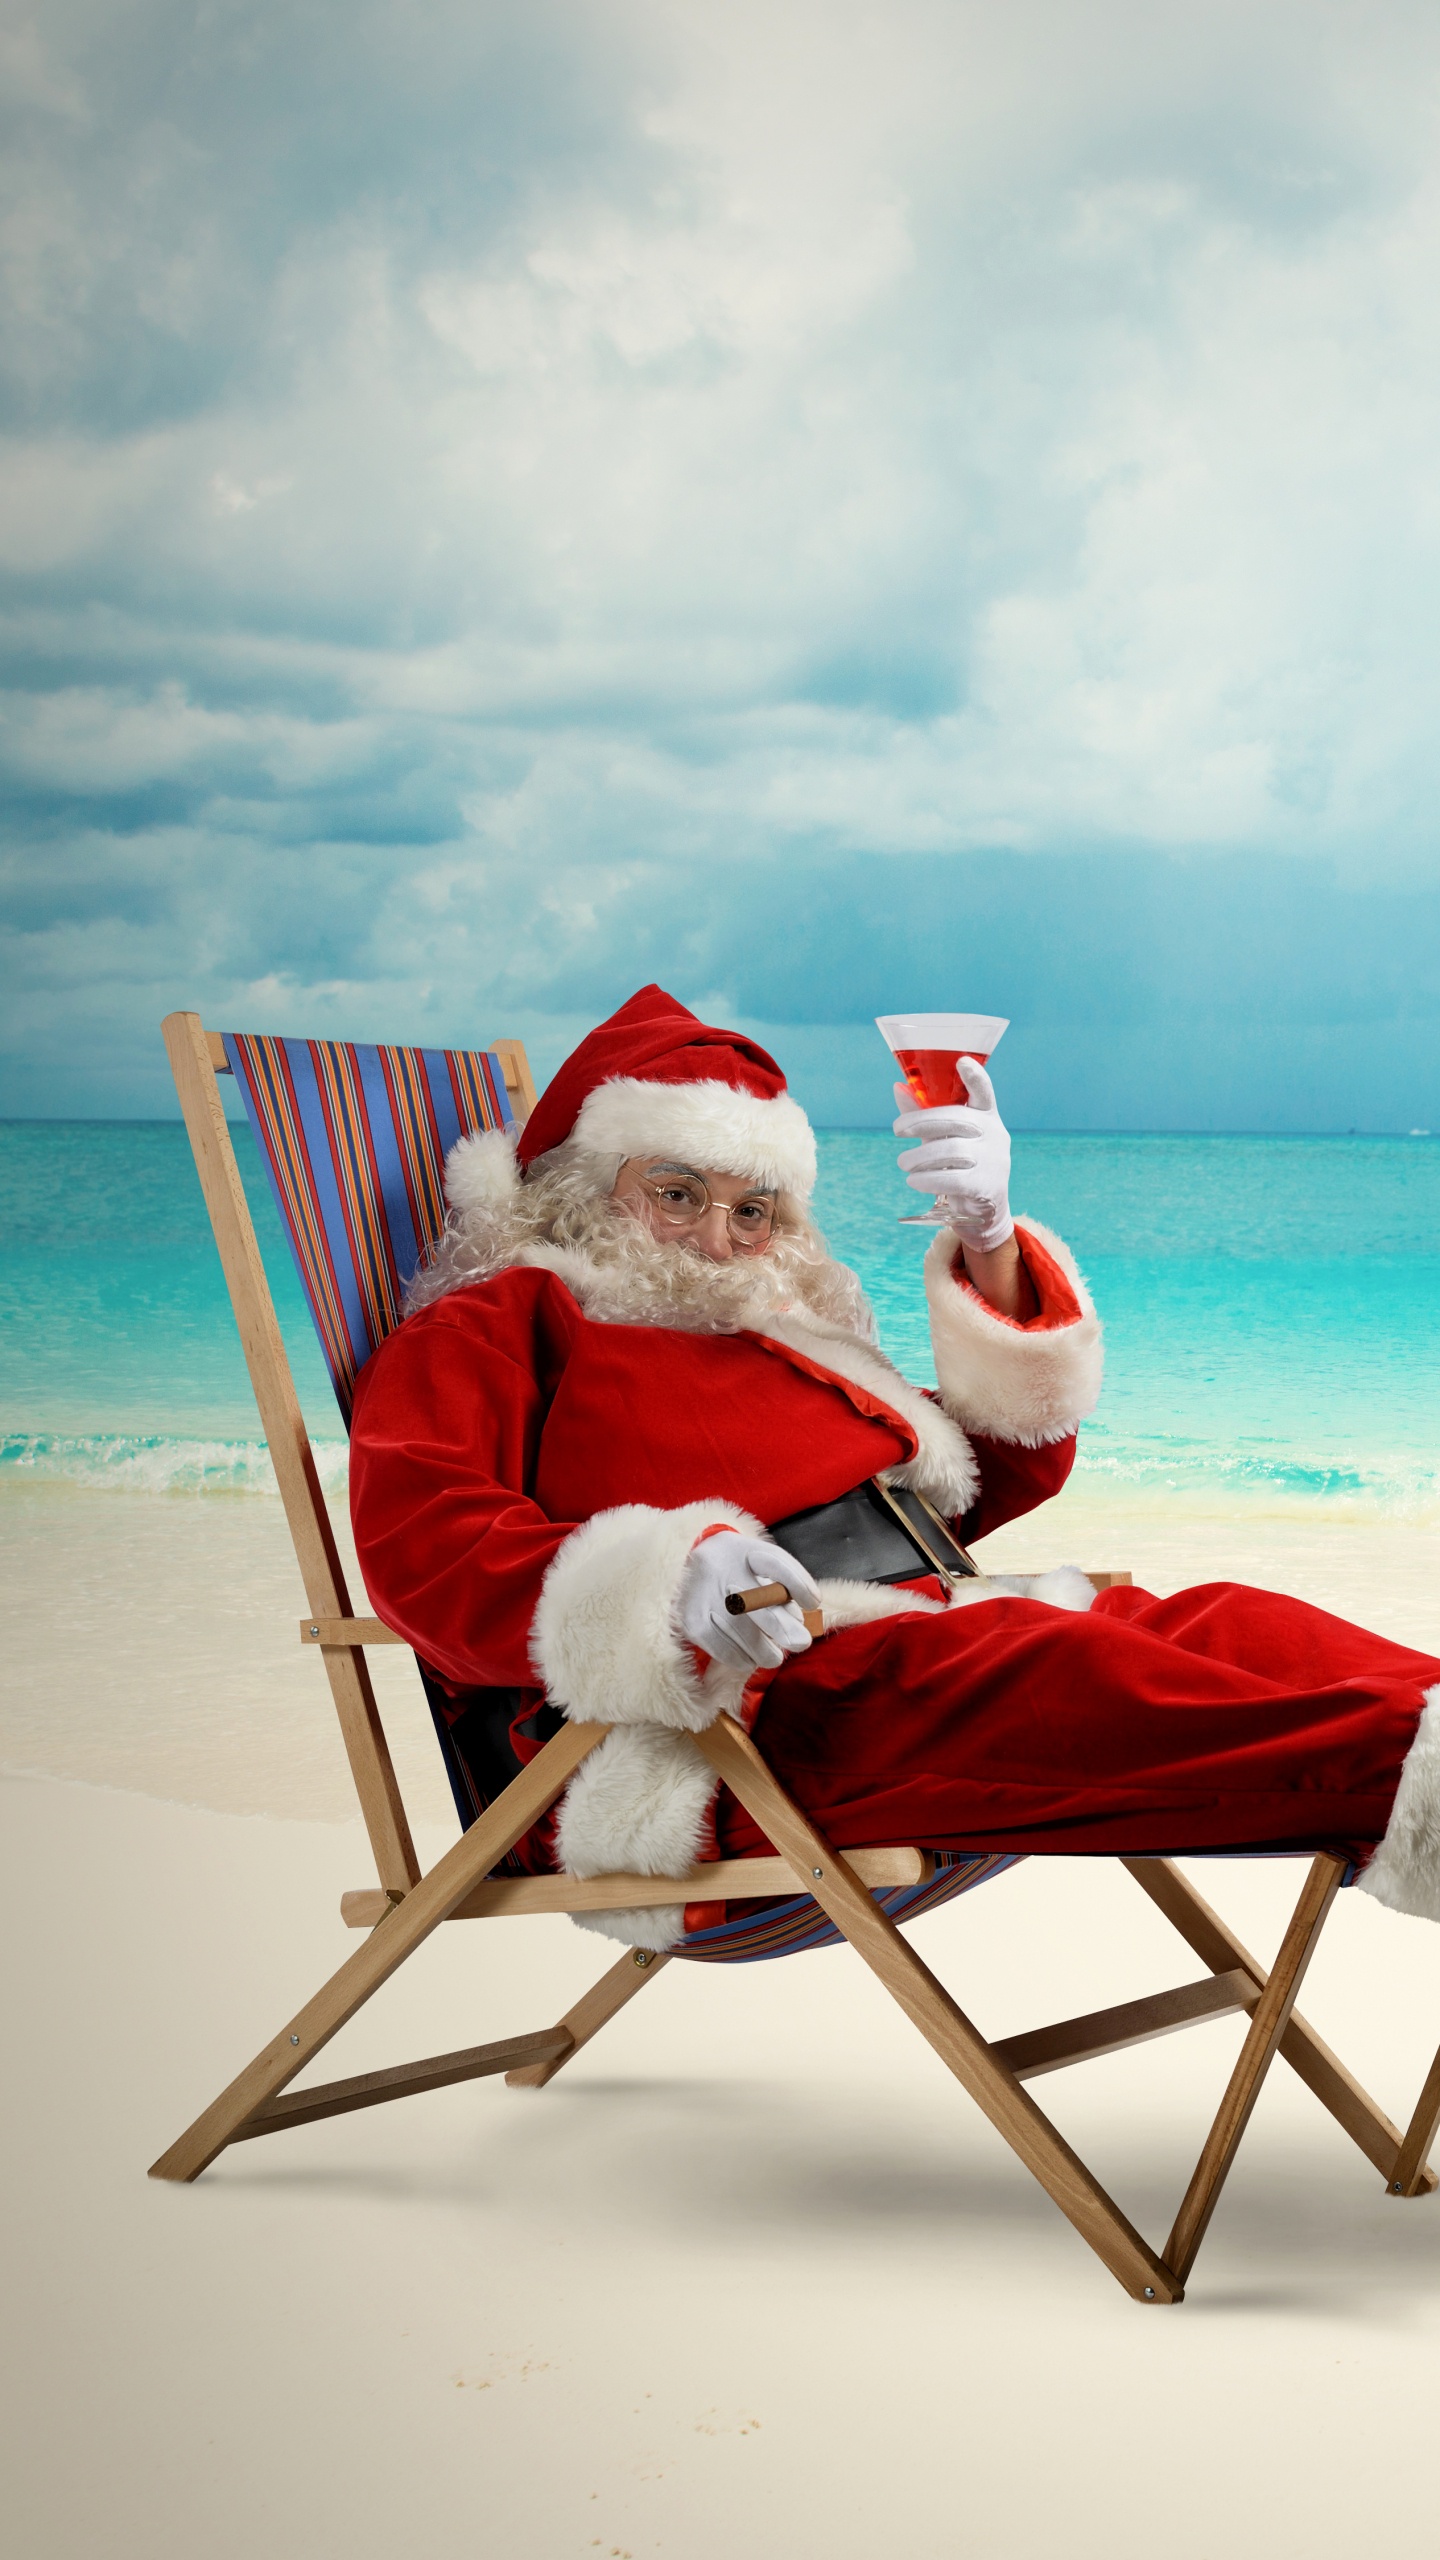 Weihnachtsmann, Weihnachten, Strand, Meer, Urlaub. Wallpaper in 1440x2560 Resolution